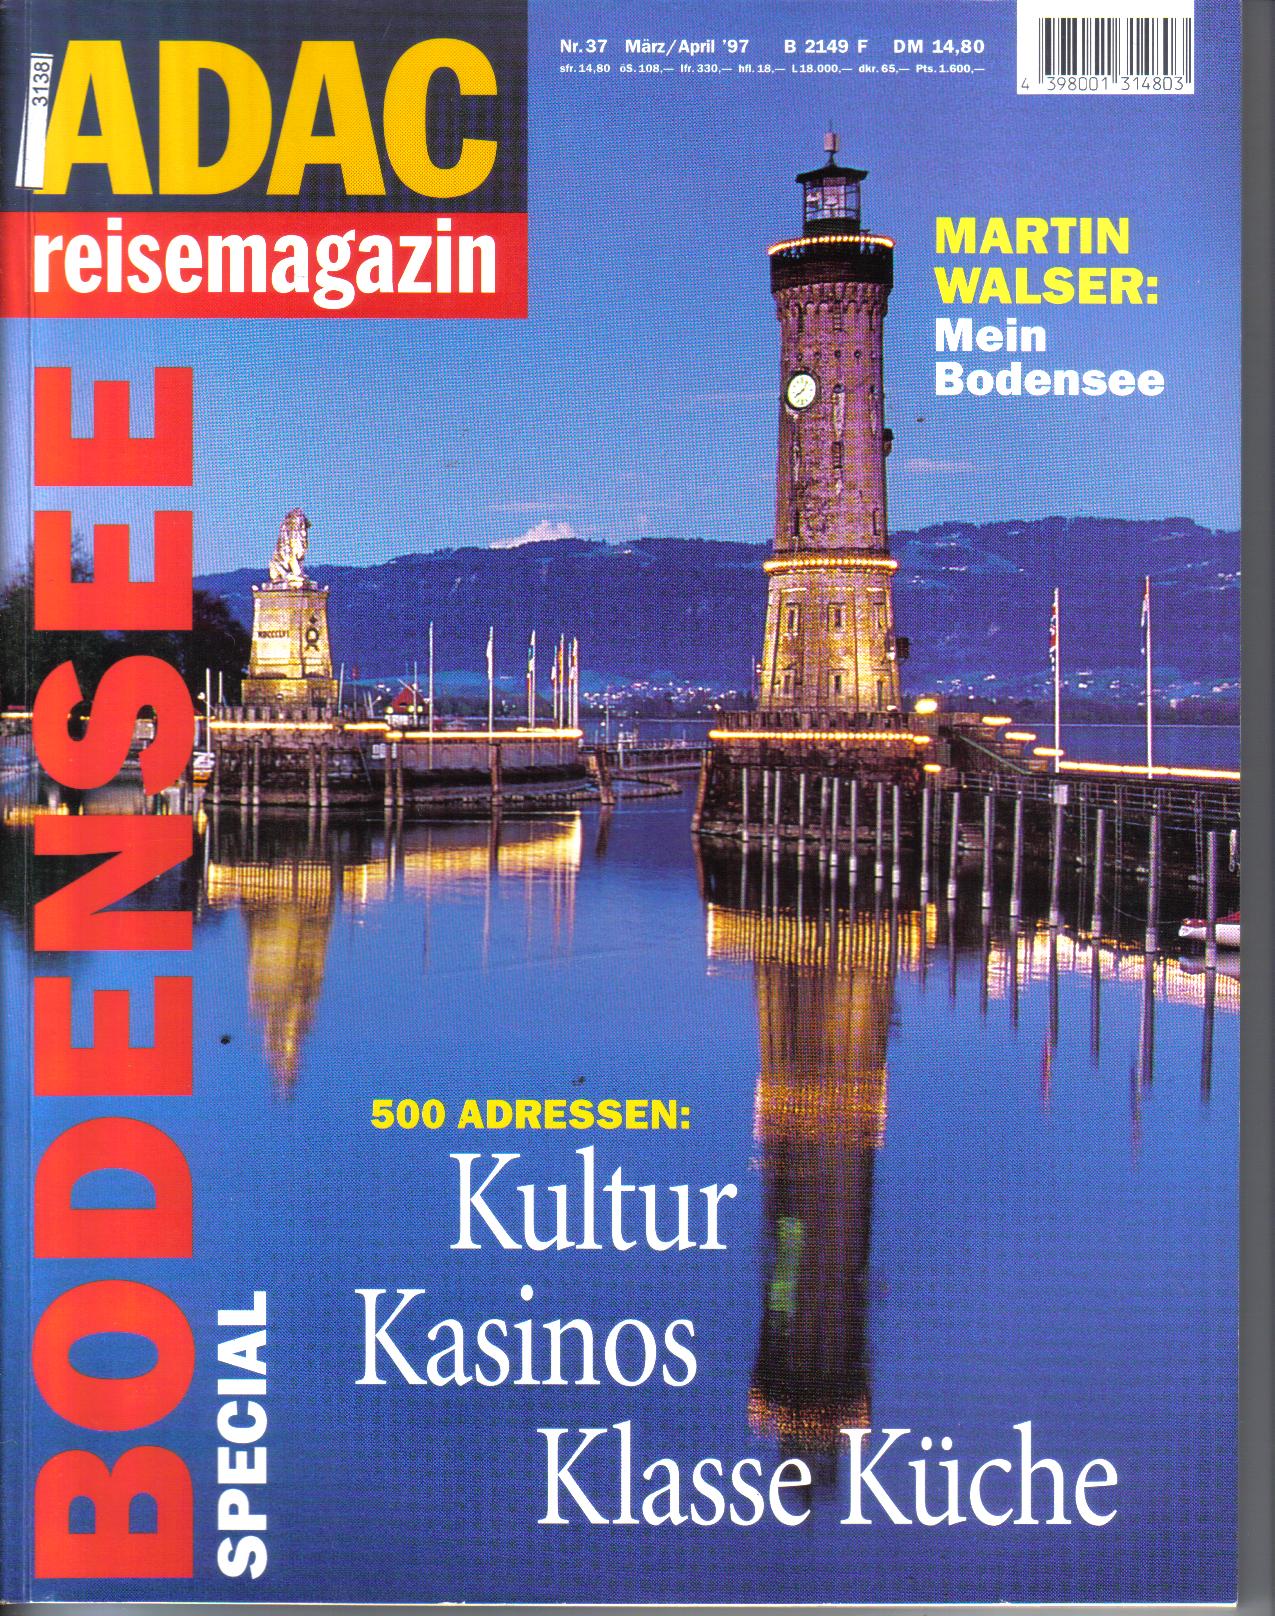 ADAC Reisemagazin  Bodensee special